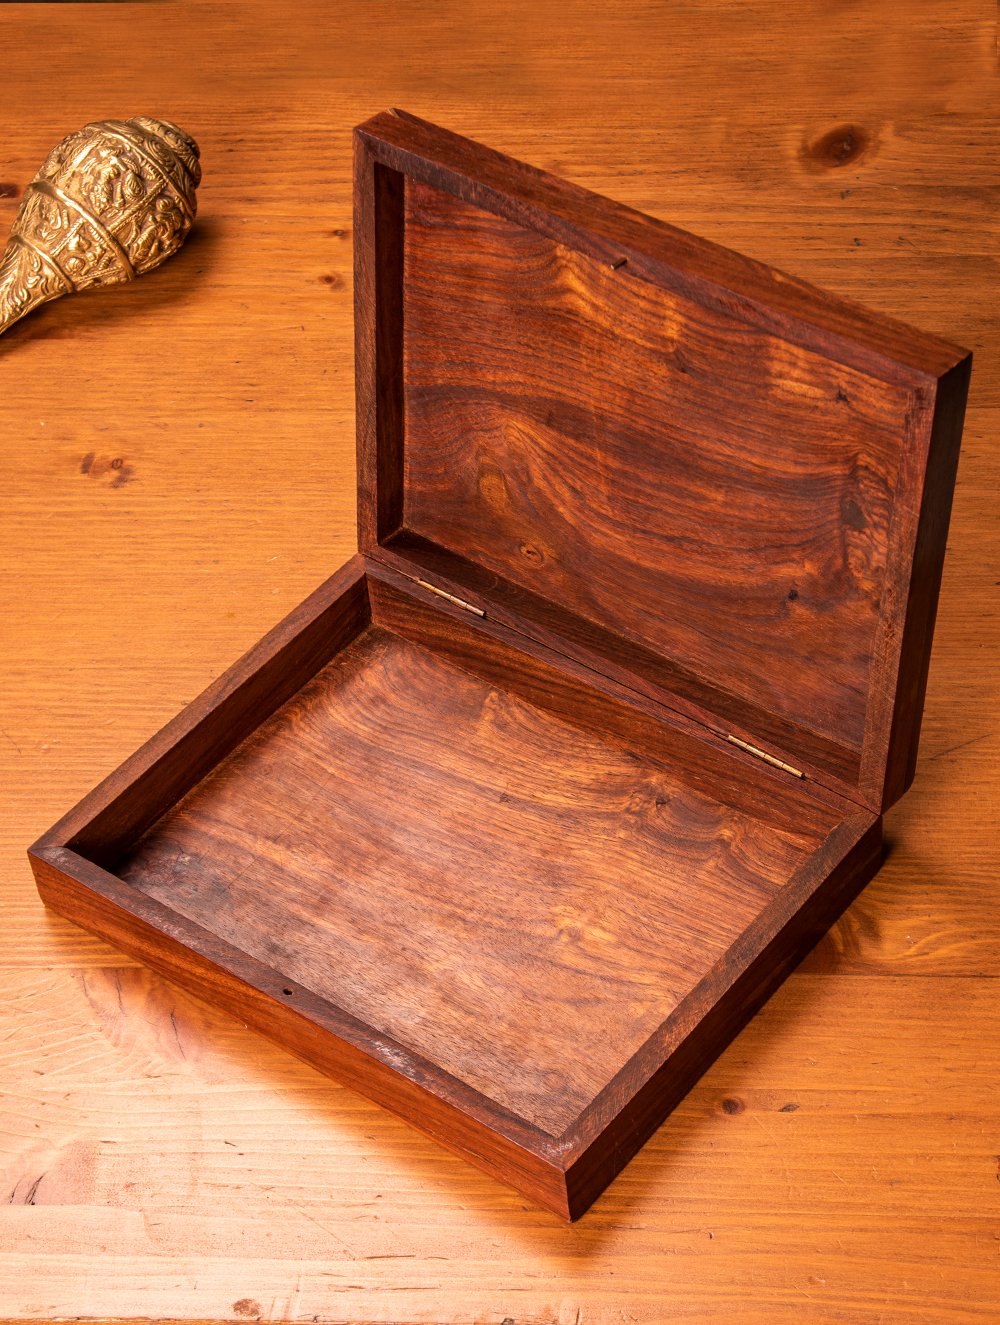 Buy Tarakashi Wooden Engraved Decorative Utility Box, Large Online